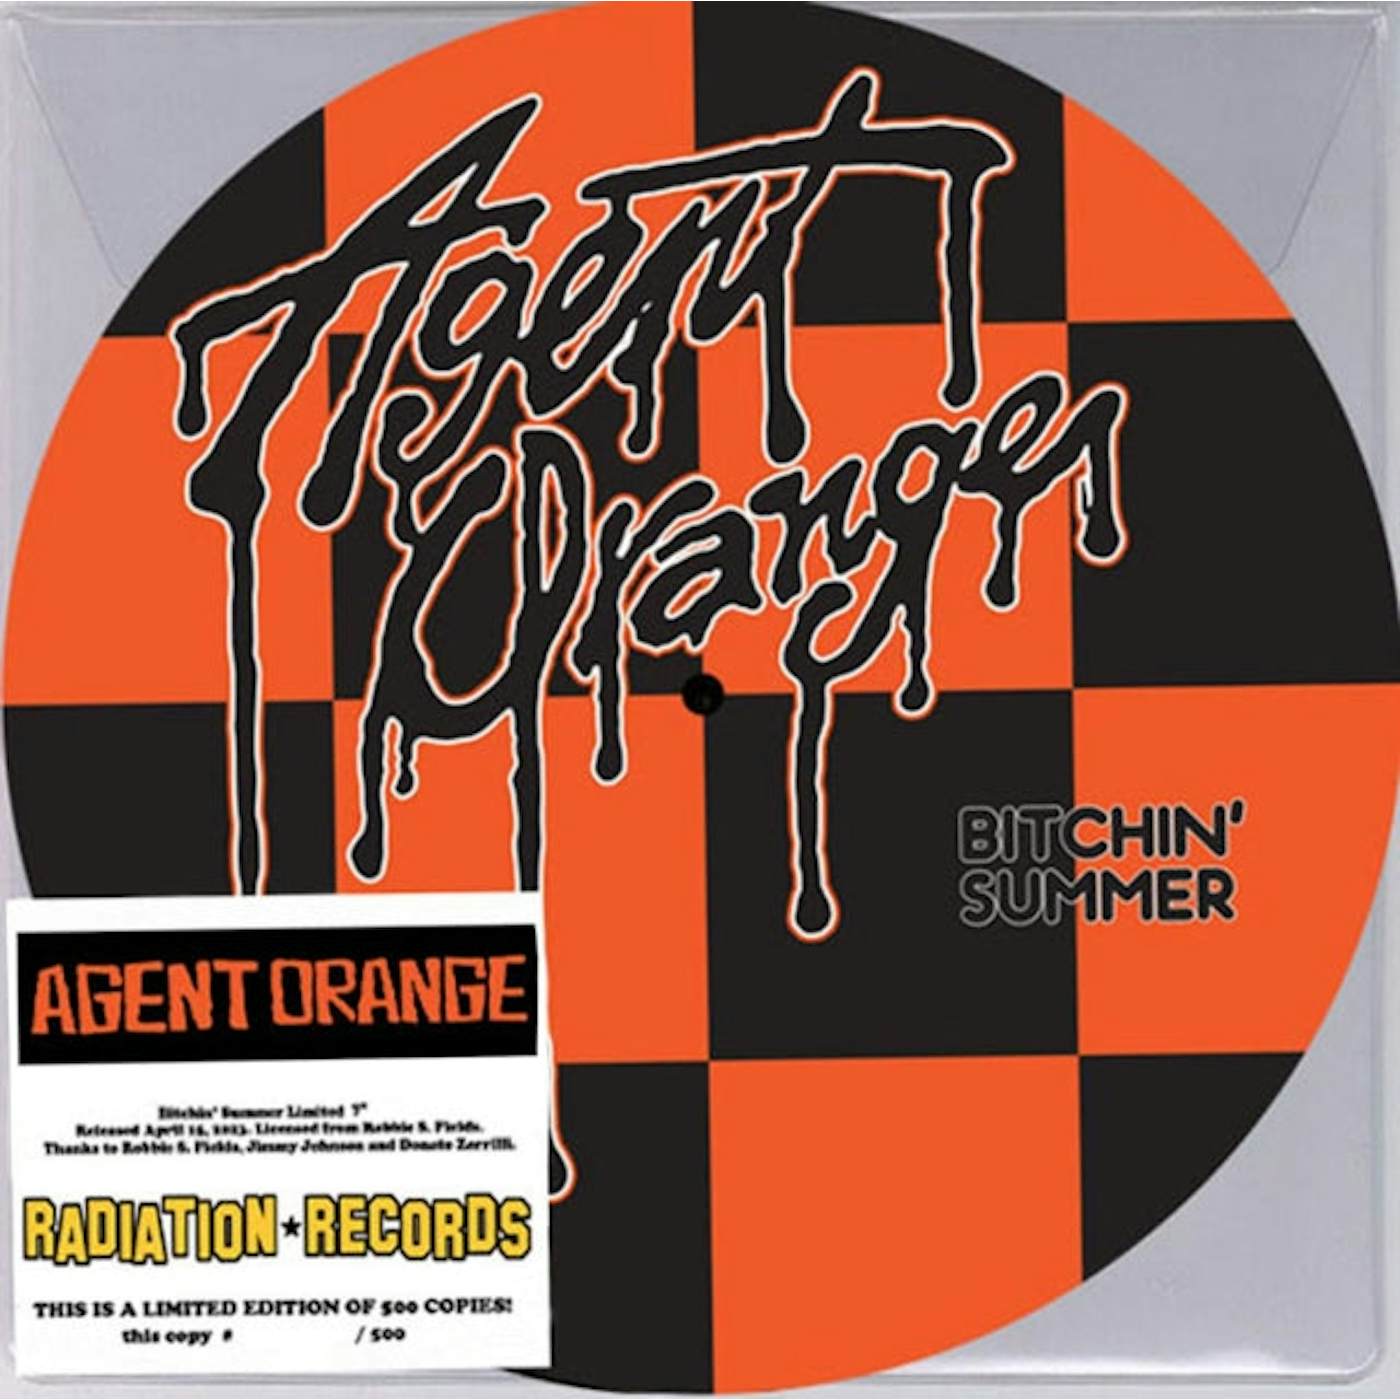 Agent Orange LP - Bitchin' Summer (Picture Disc) (Vinyl)